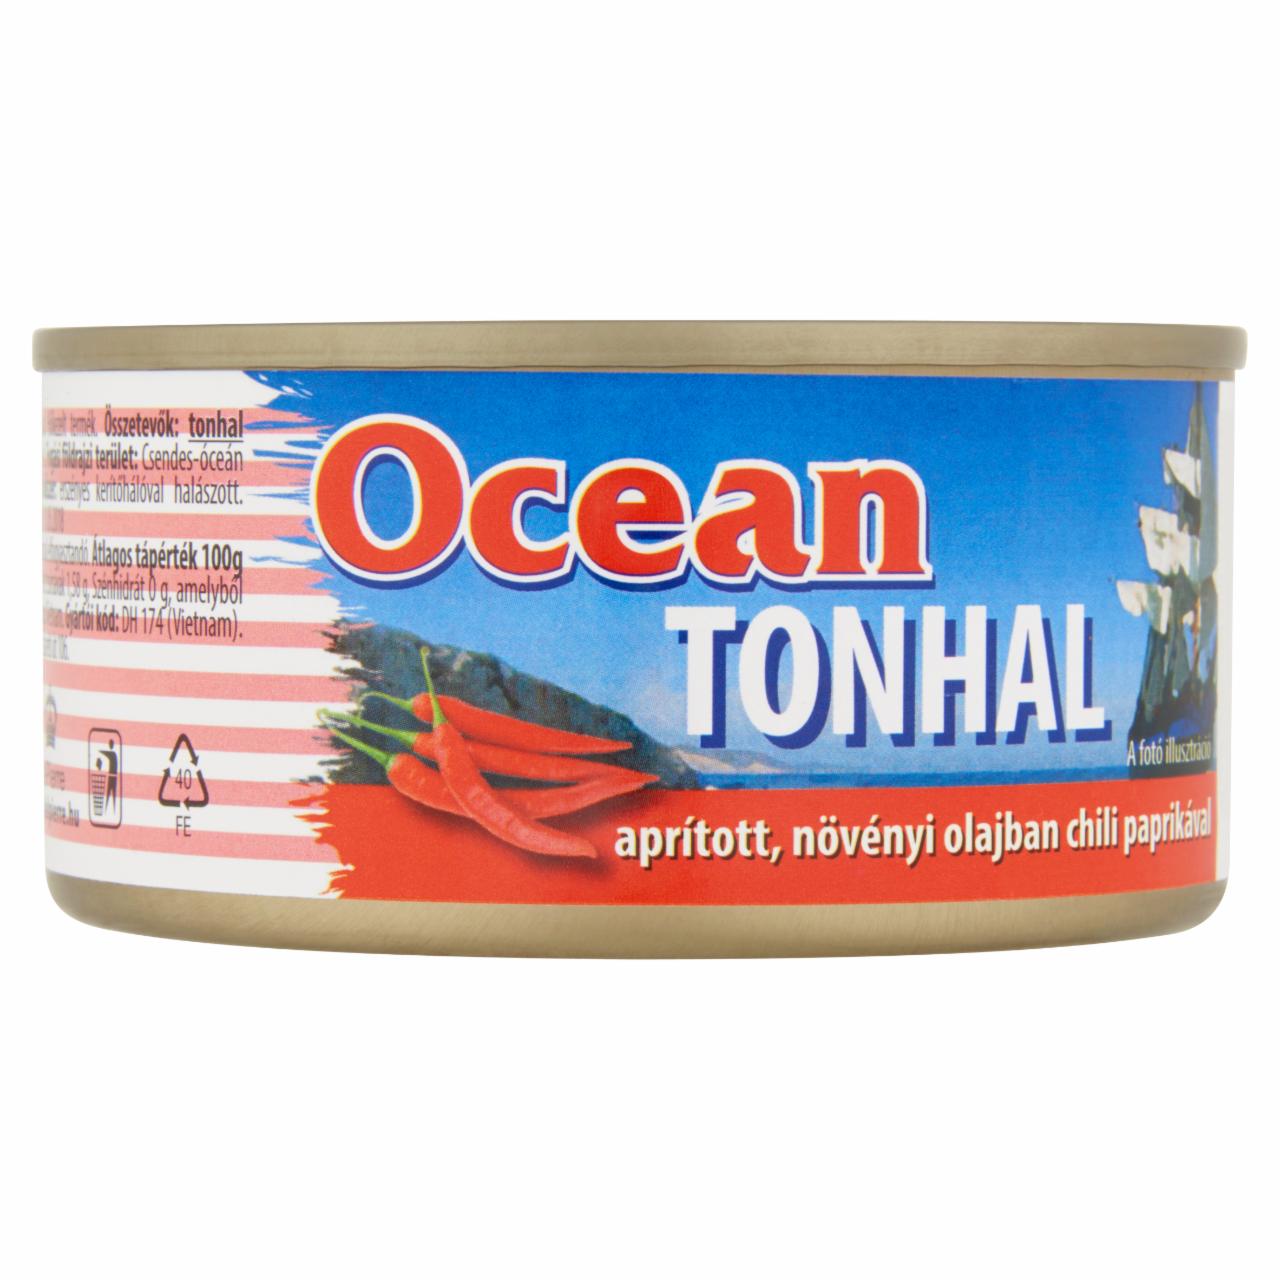 Képek - Ocean aprított tonhal növényi olajban, chili paprikával 185 g